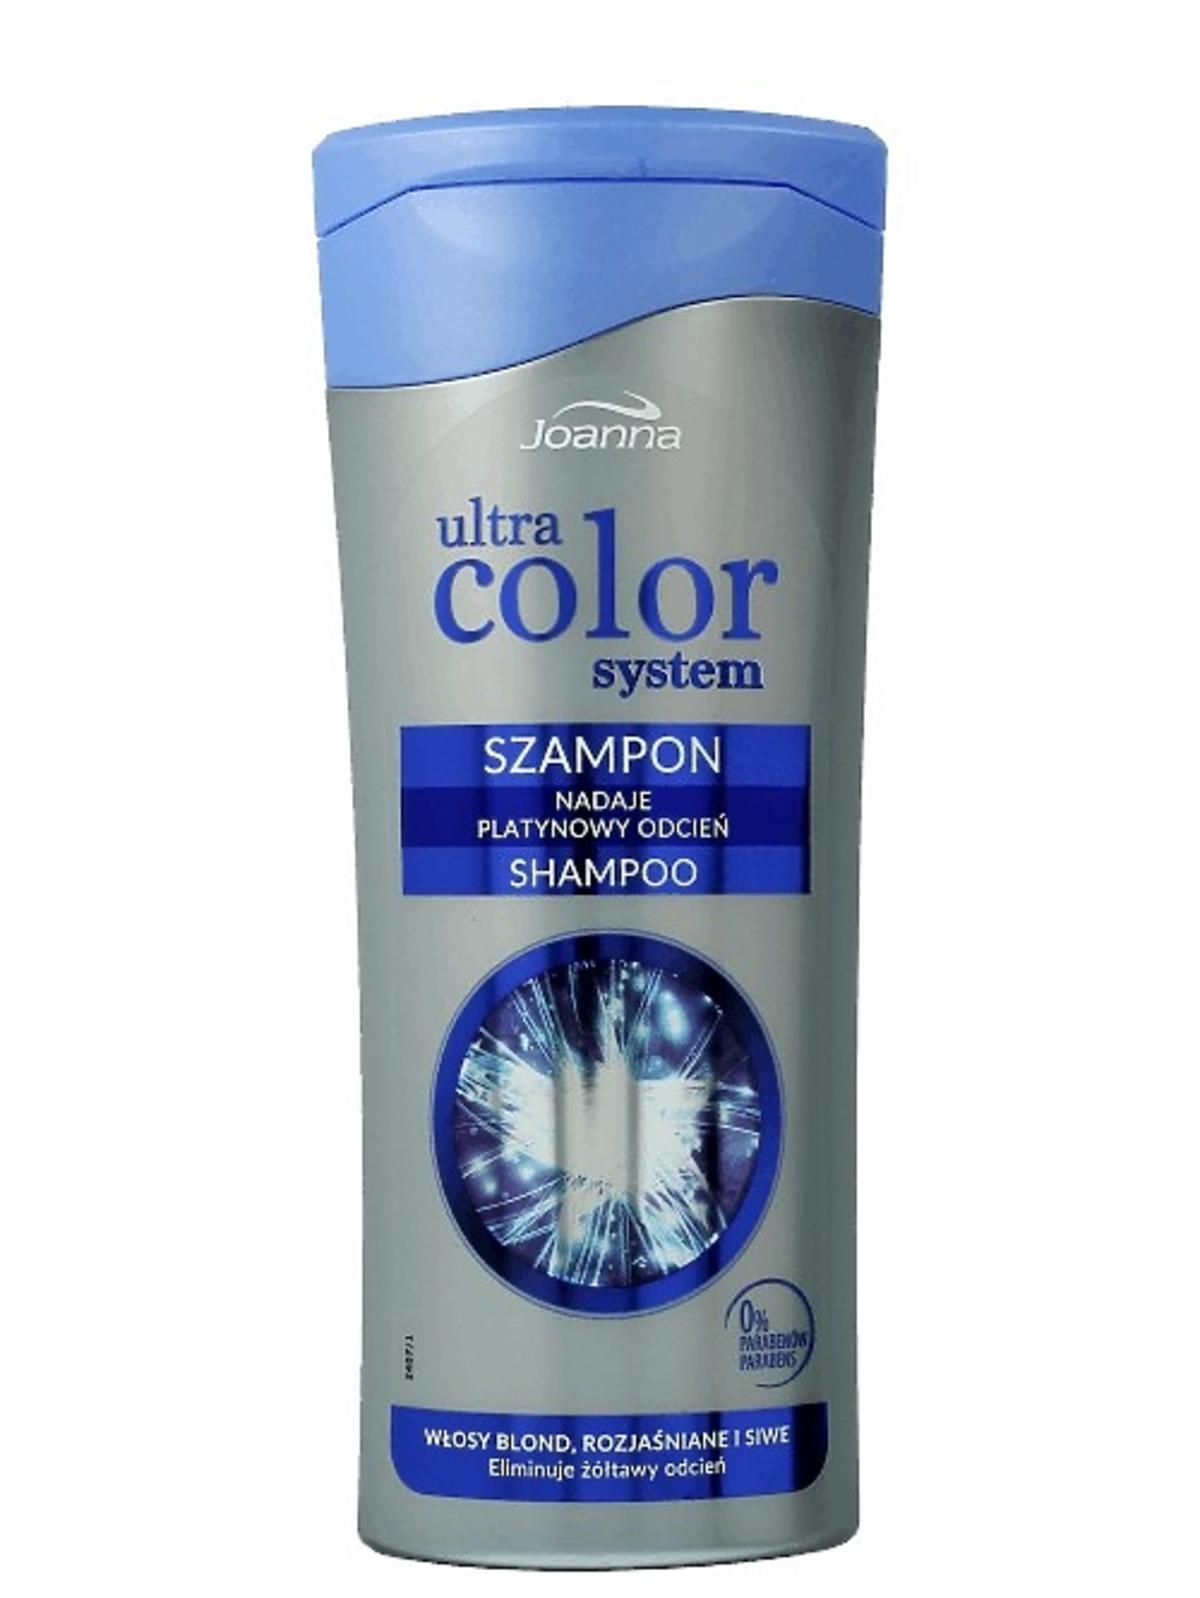 Joanna, Ultra Color System, szampon do włosów blond, rozjaśnianych i siwych, 7,99 zł